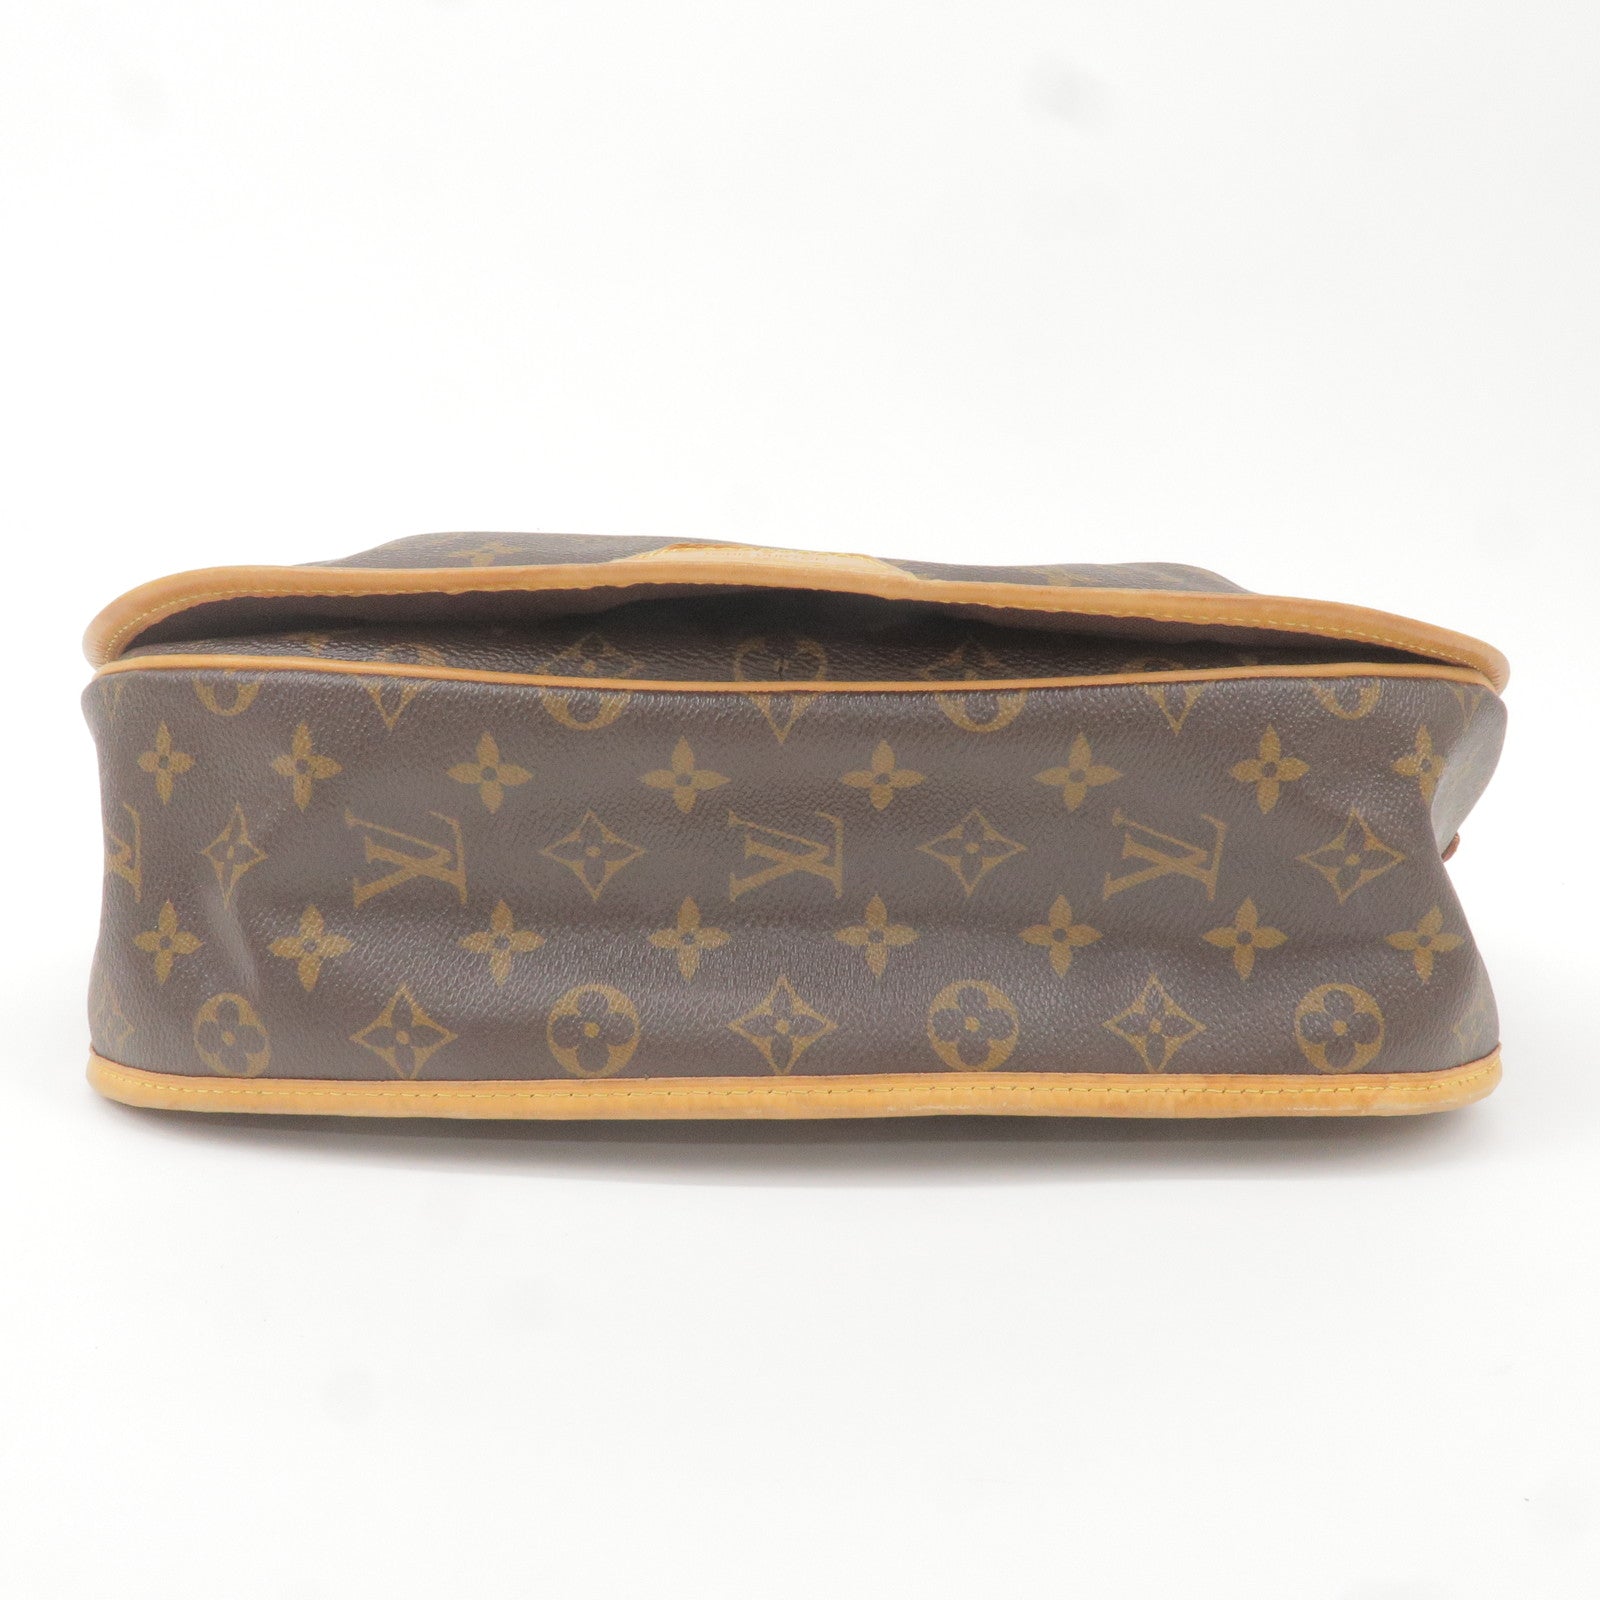 Bag - Shoulder - MM - Vuitton - Monogram - Menilmontant - Louis Vuitton  monogram luggage - M40473 – louis vuitton white leather wallet - Louis